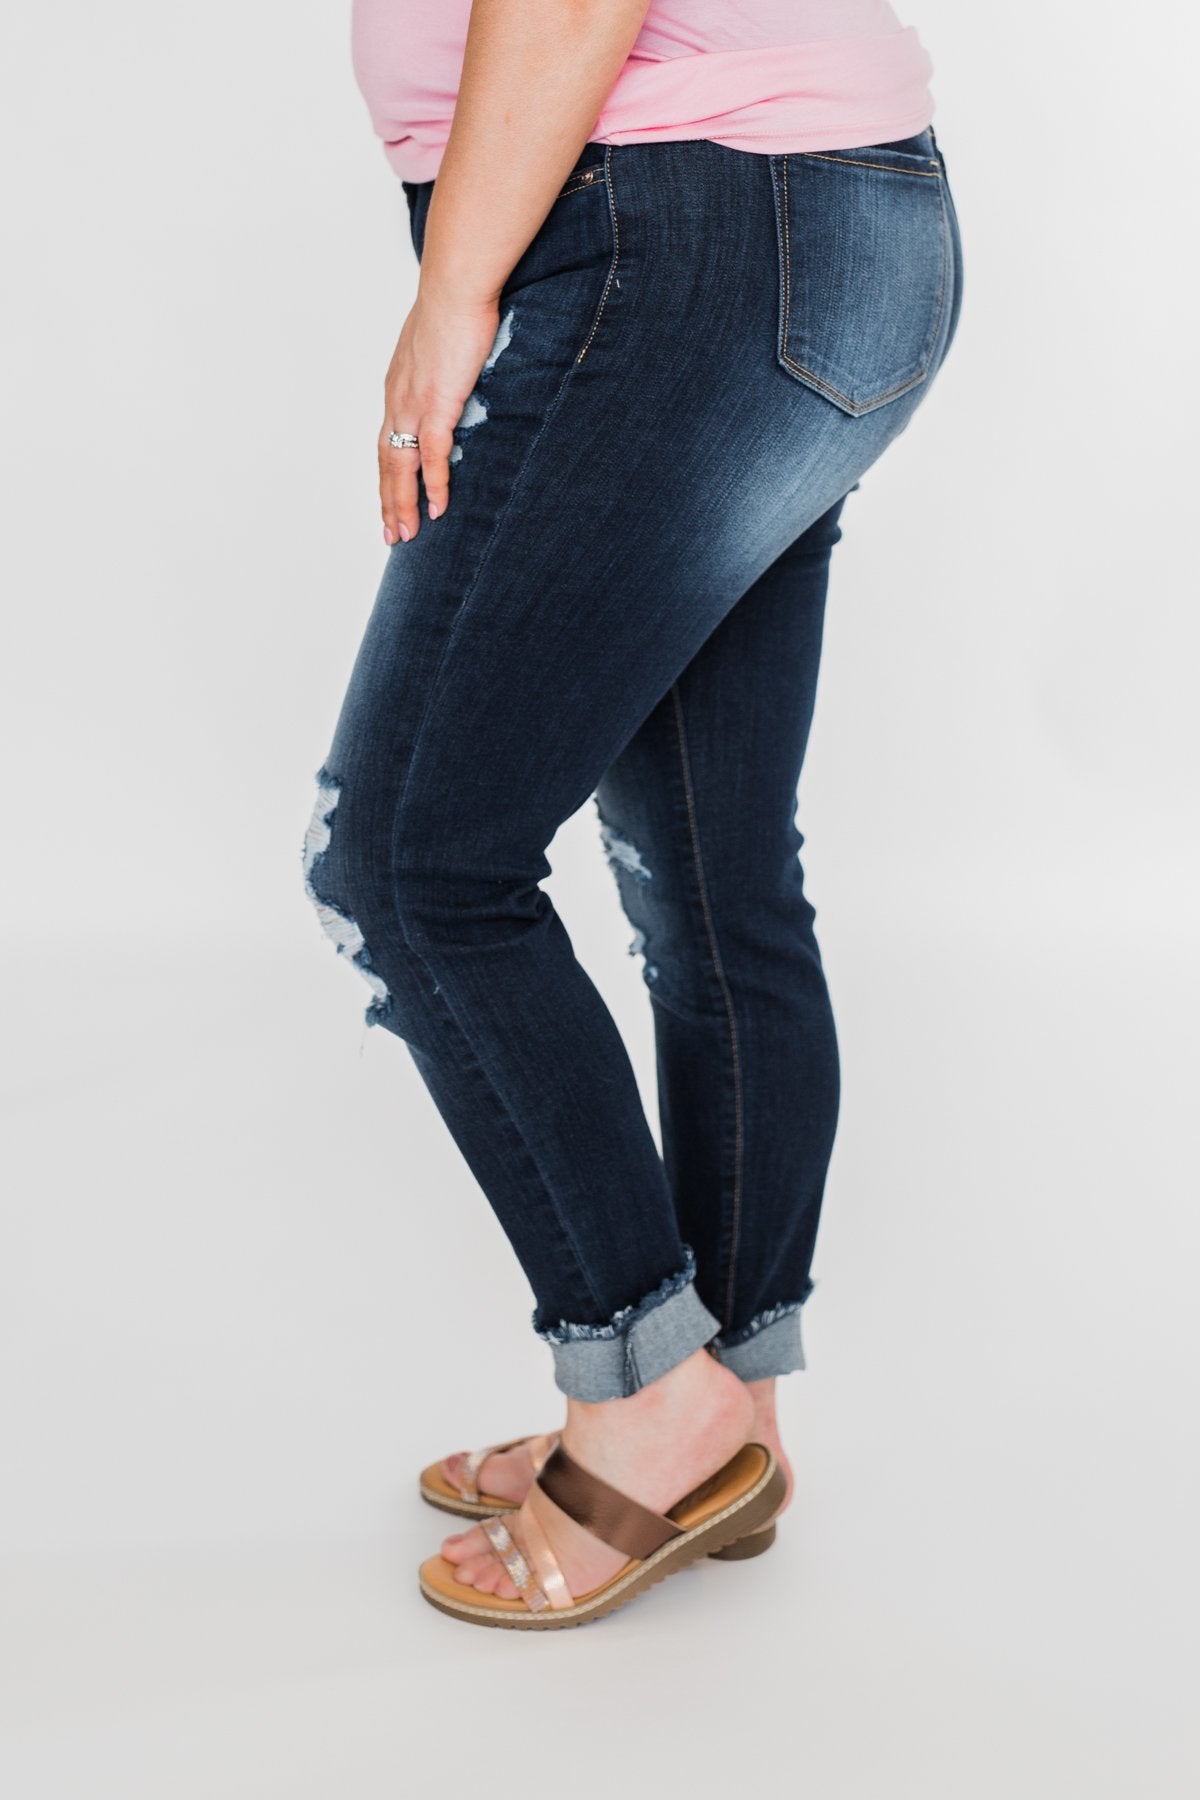 KanCan Distressed Skinny Jeans- Susie Wash